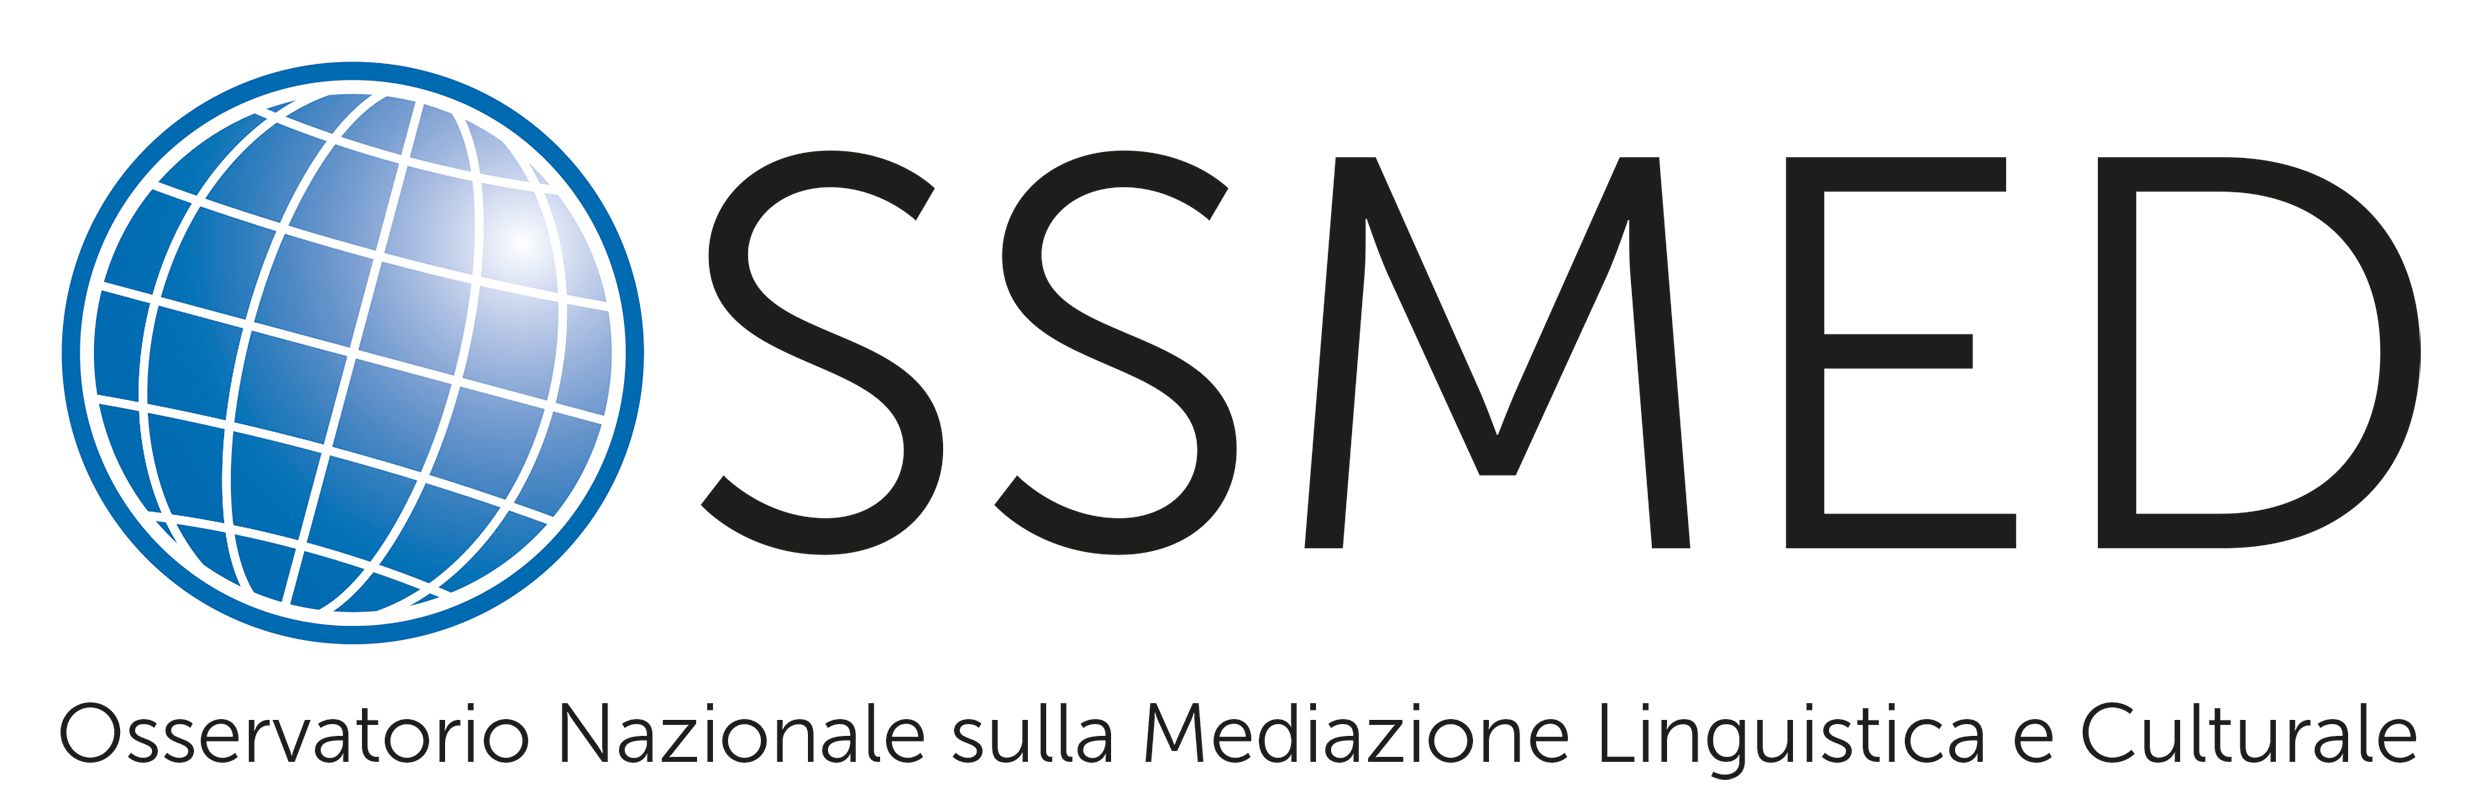 OSSMED ets logo